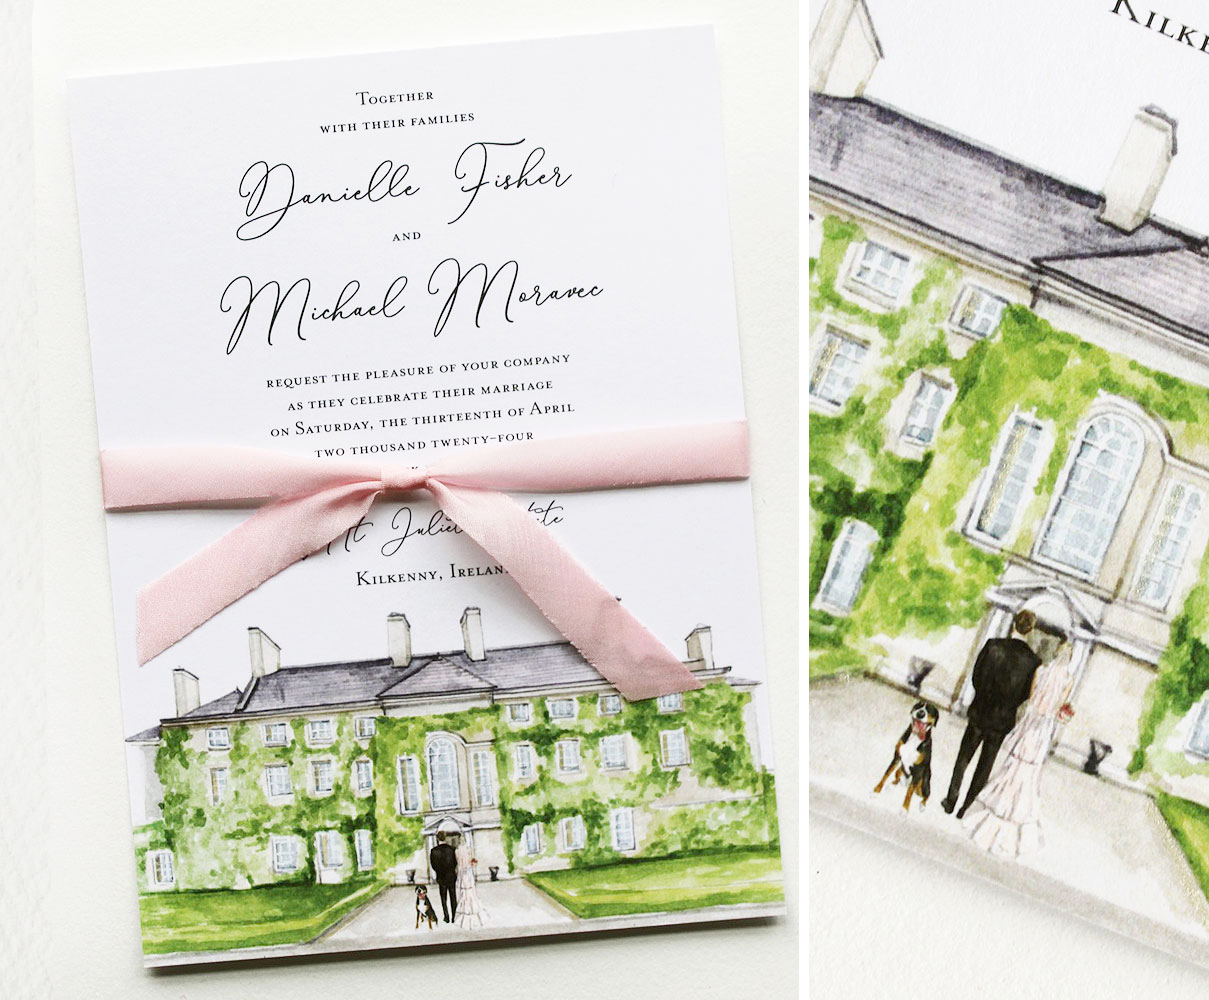 mt-juliet-estate-ireland-wedding-invitation